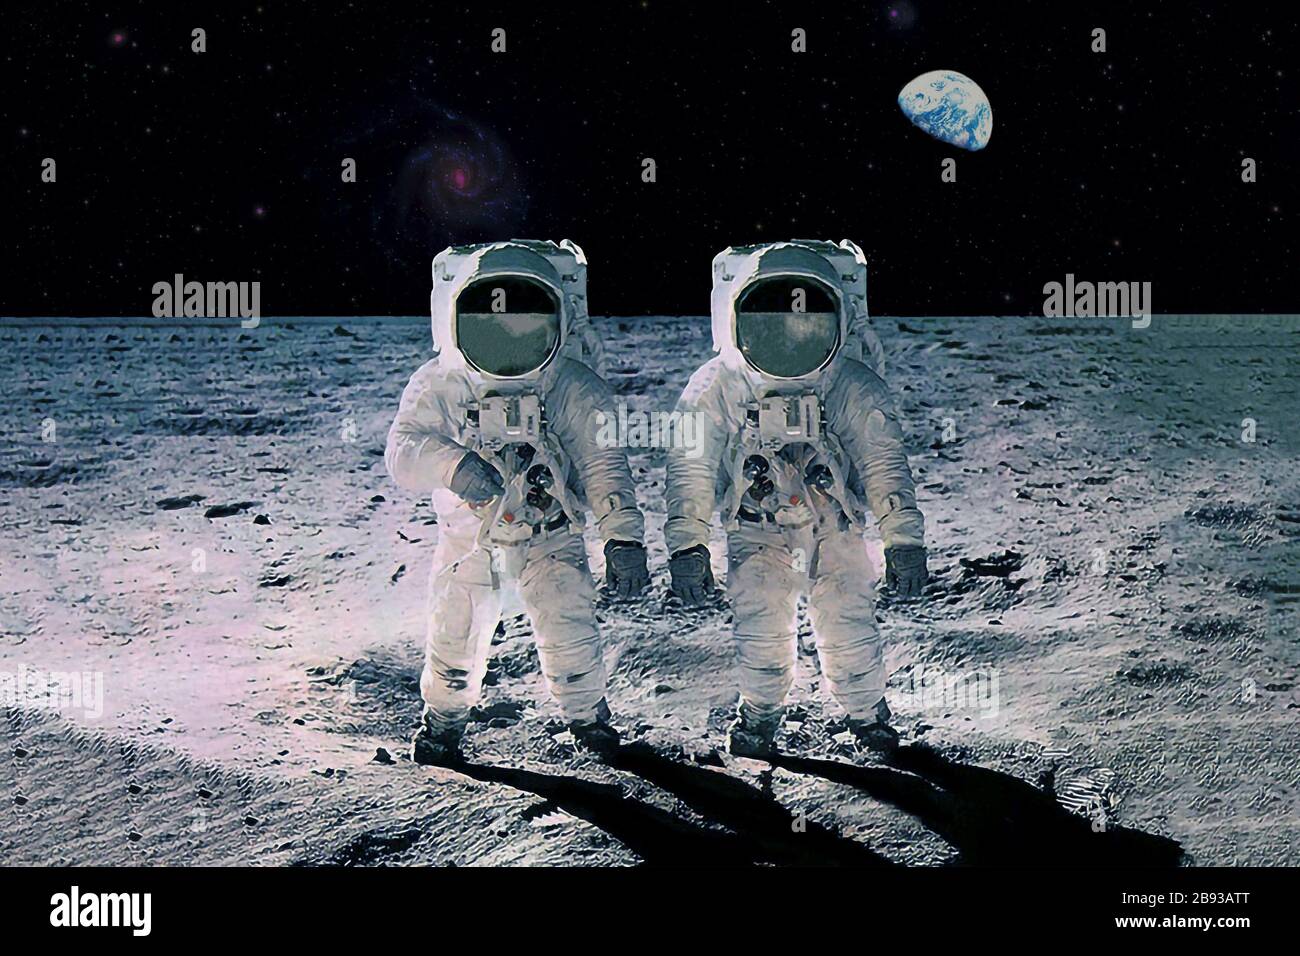 Découvrez le nom des 4 astronautes qui partiront autour de la Lune